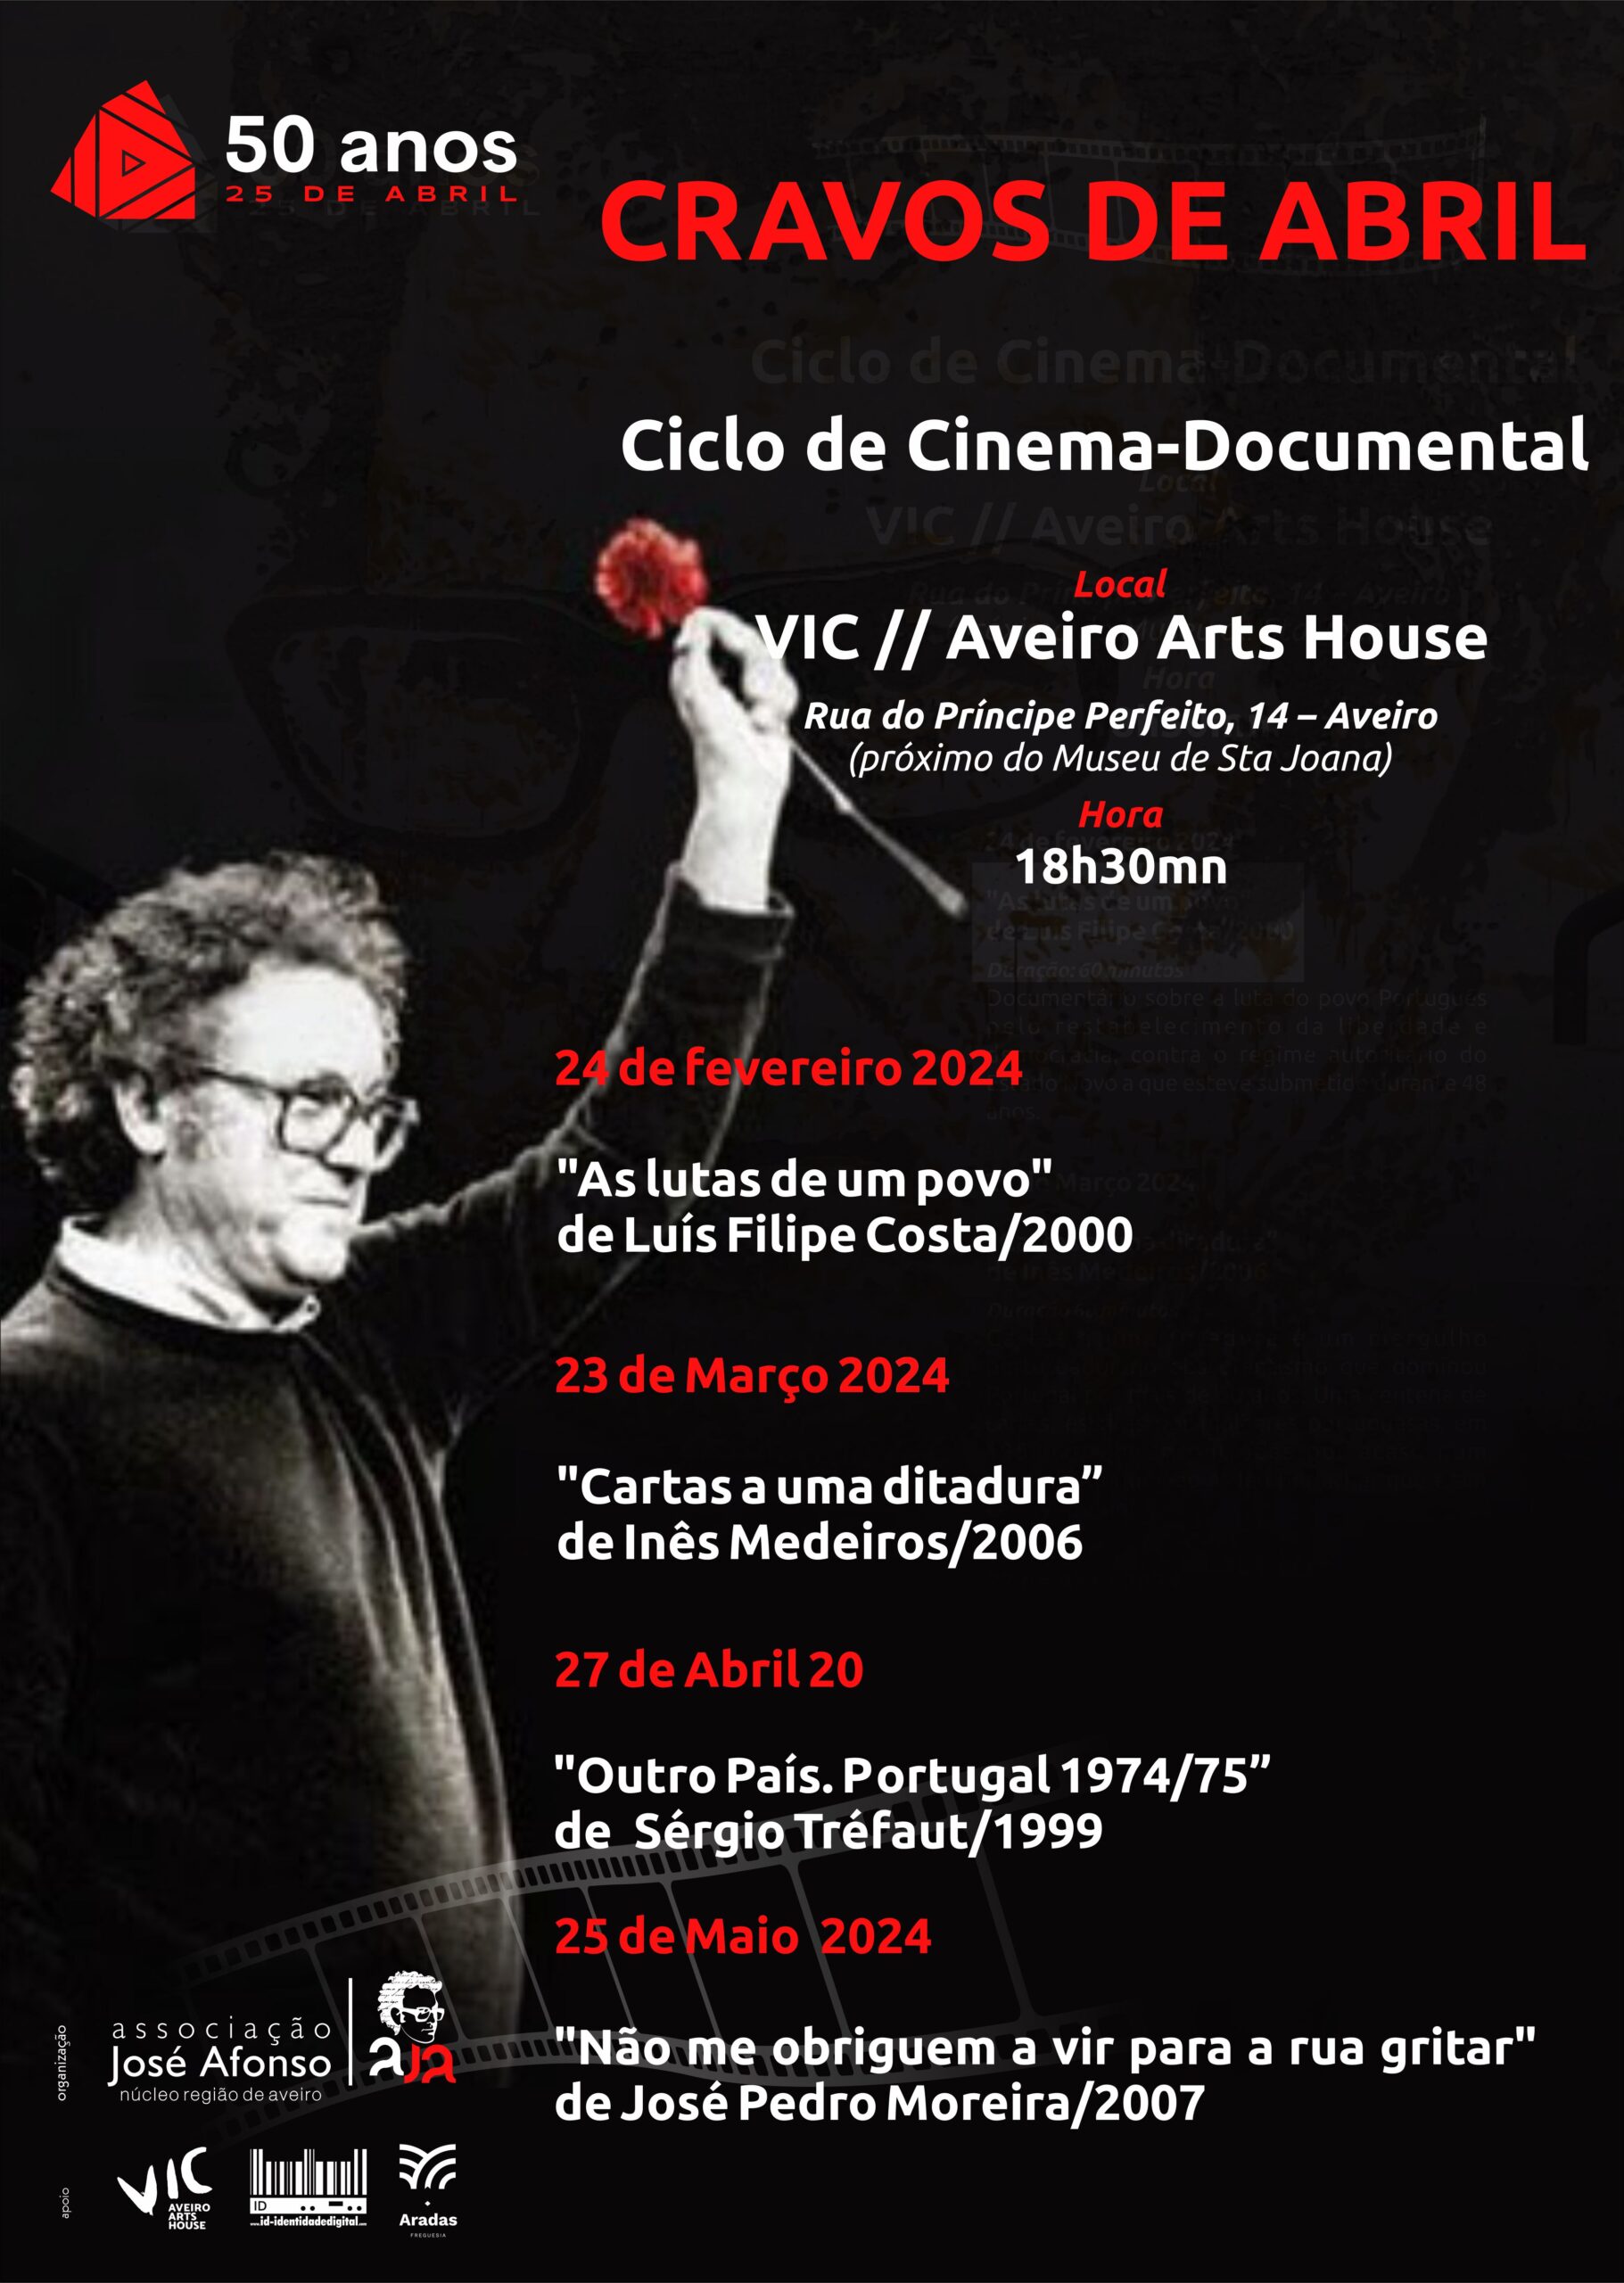 Associação José Afonso – Núcleo Região de Aveiro continua comemorações dos 50 anos do 25 de Abril, com projeção de filme ‘Não me obriguem a vir para a rua gritar’